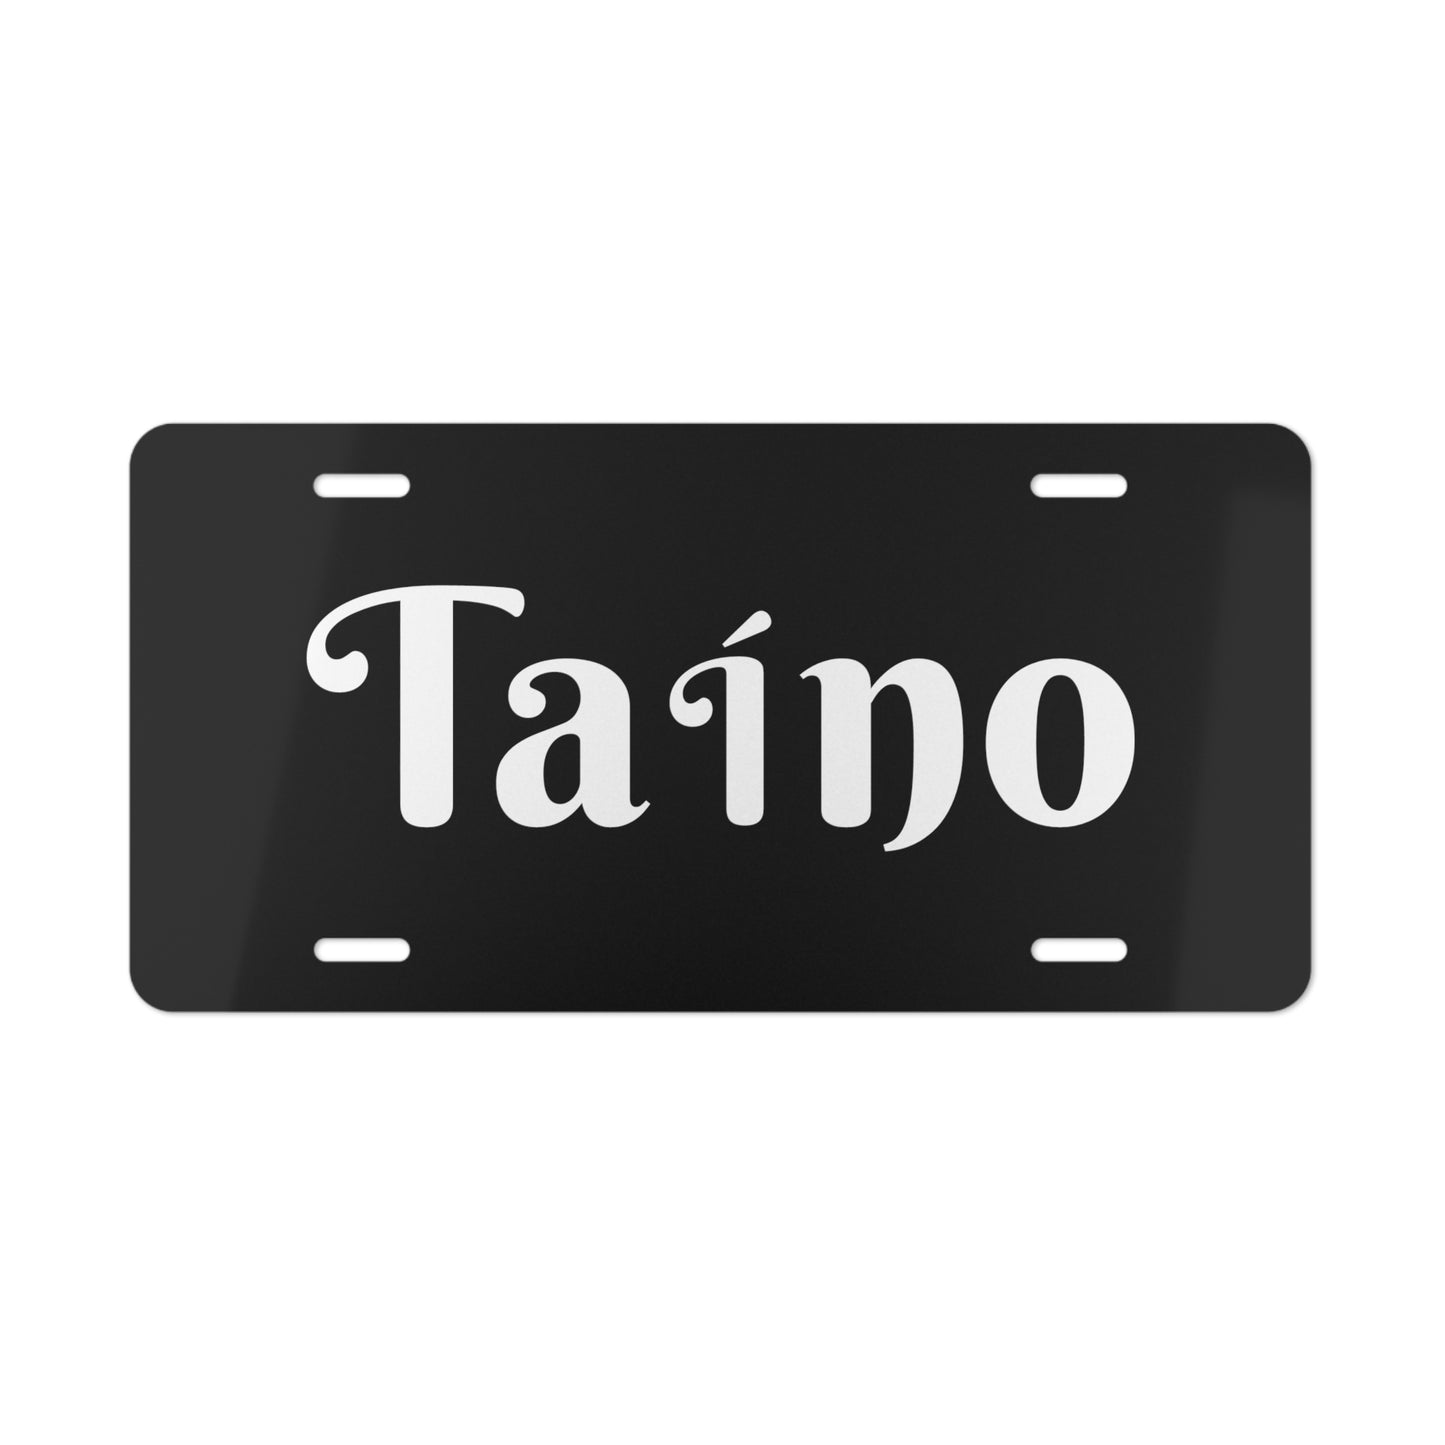 Taino Vanity Plate